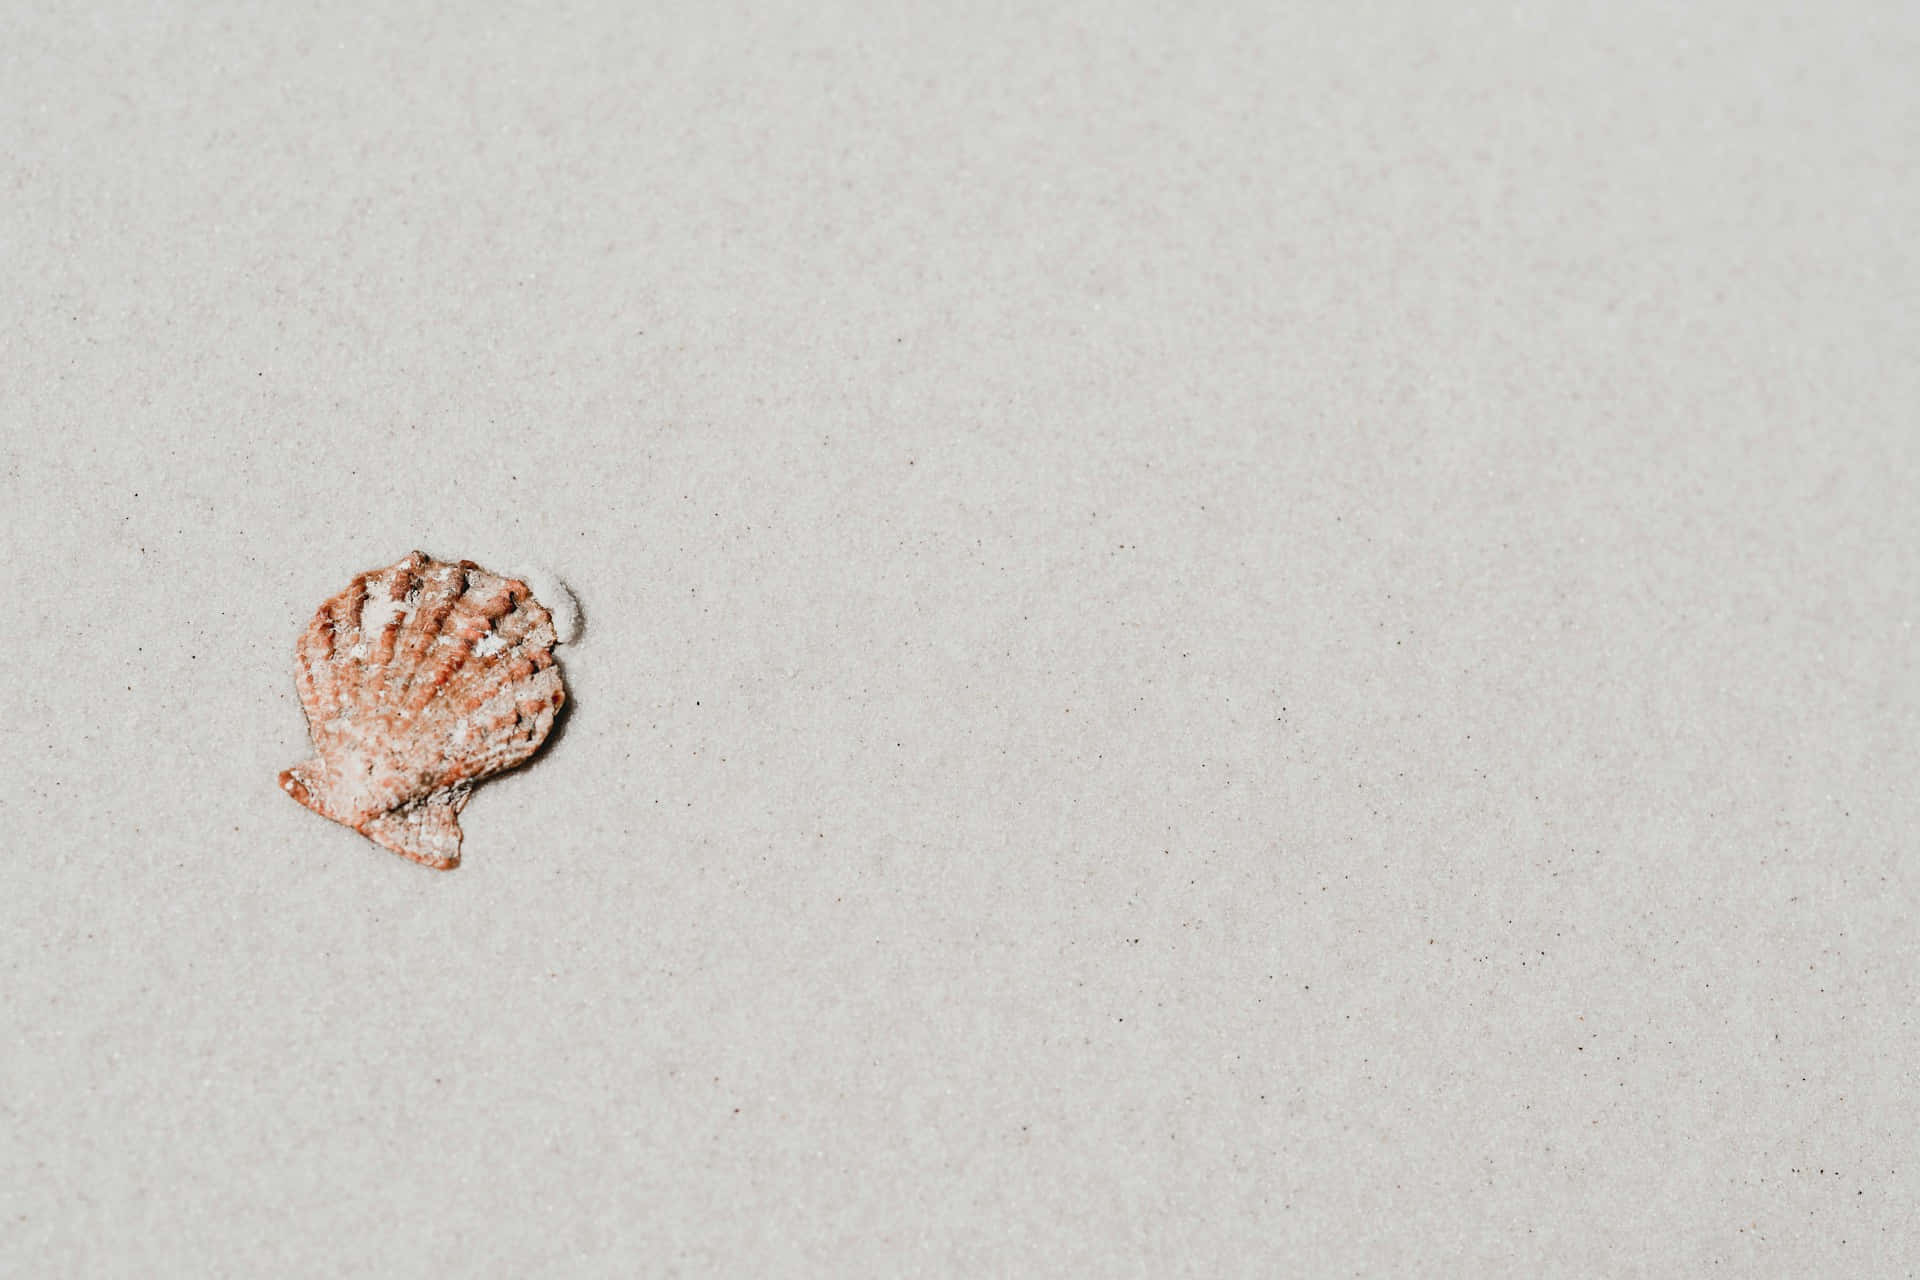 Solitary Seashellon Sand.jpg Wallpaper